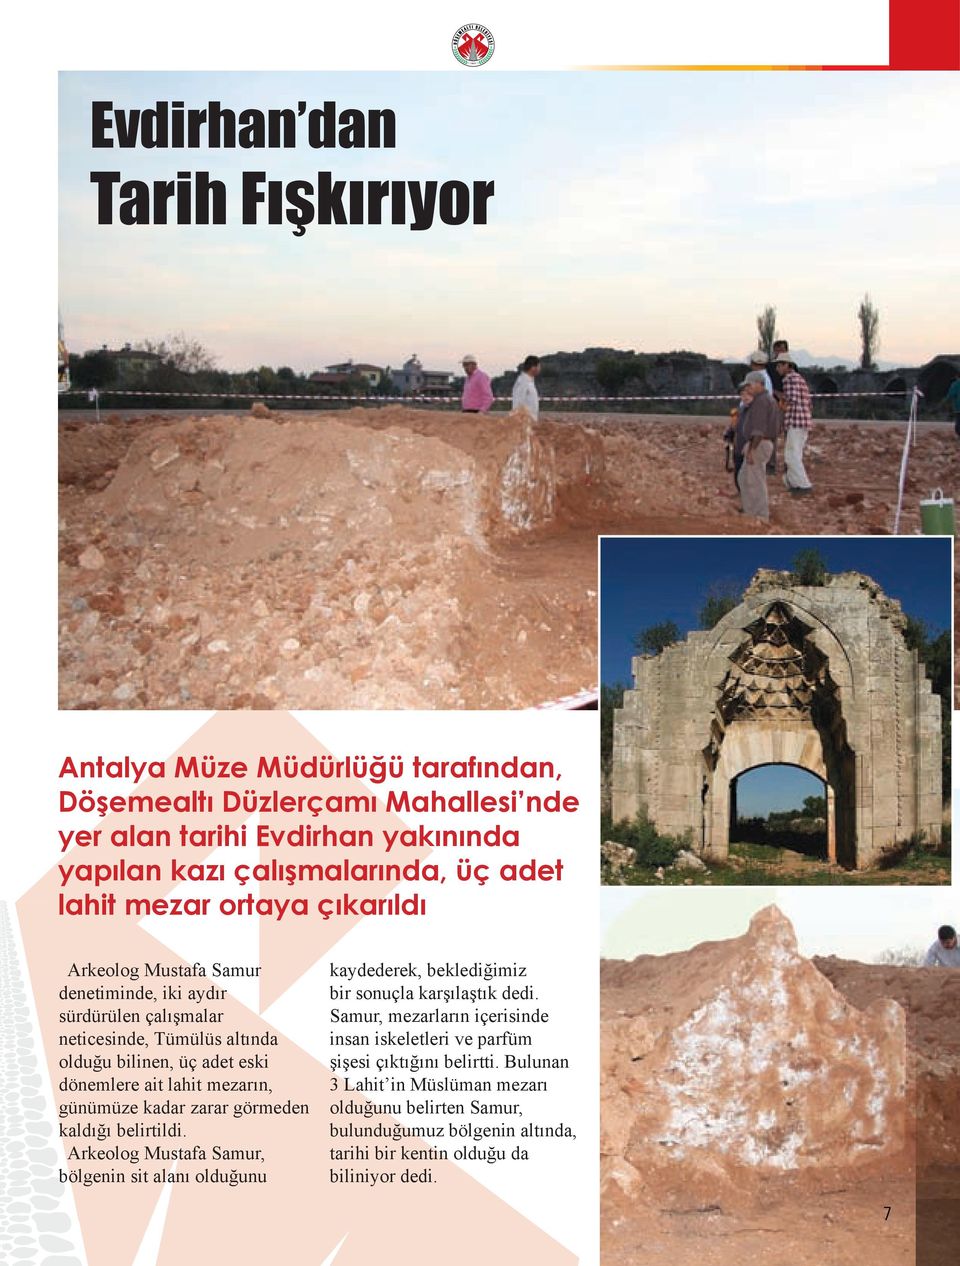 günümüze kadar zarar görmeden kaldığı belirtildi. Arkeolog Mustafa Samur, bölgenin sit alanı olduğunu kaydederek, beklediğimiz bir sonuçla karşılaştık dedi.